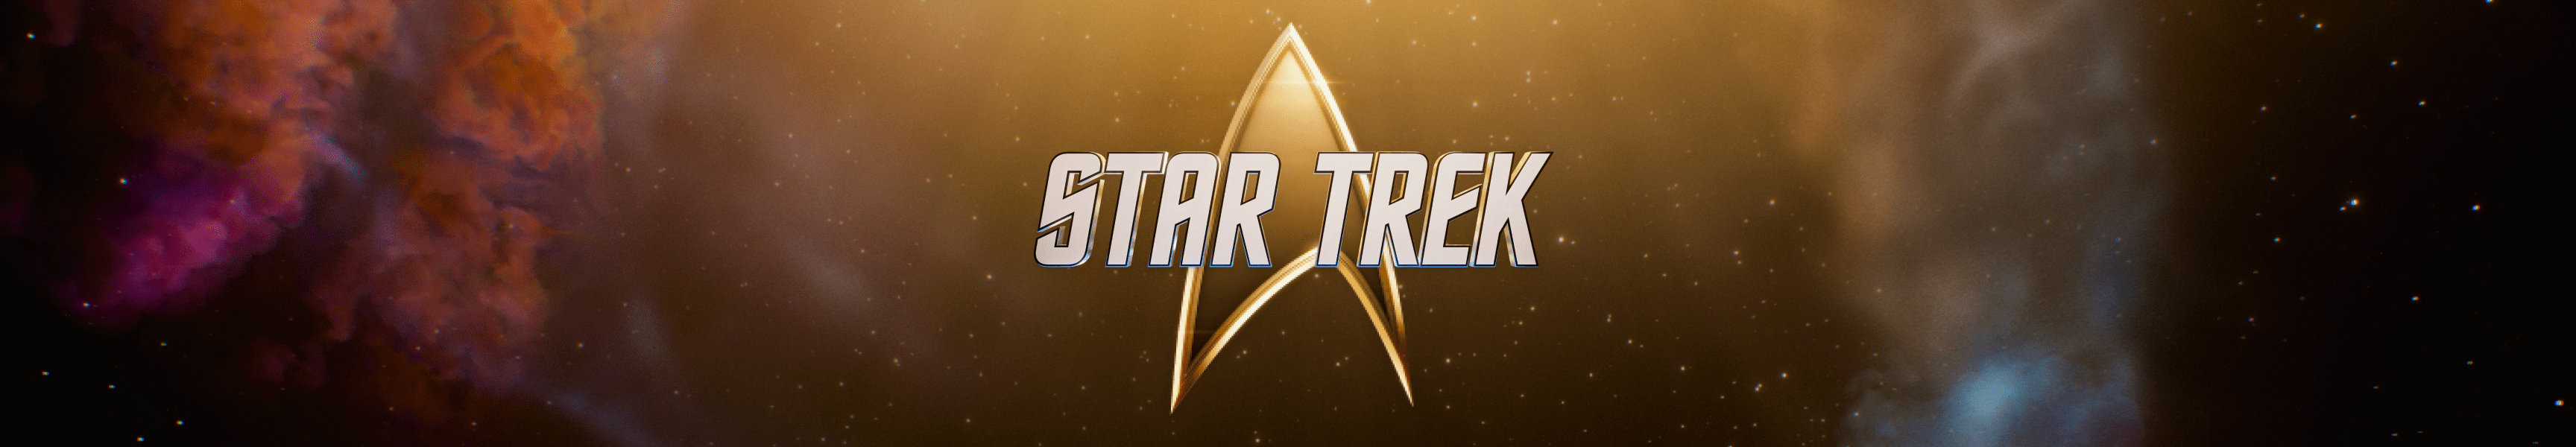 Star Trek Los más vendidos